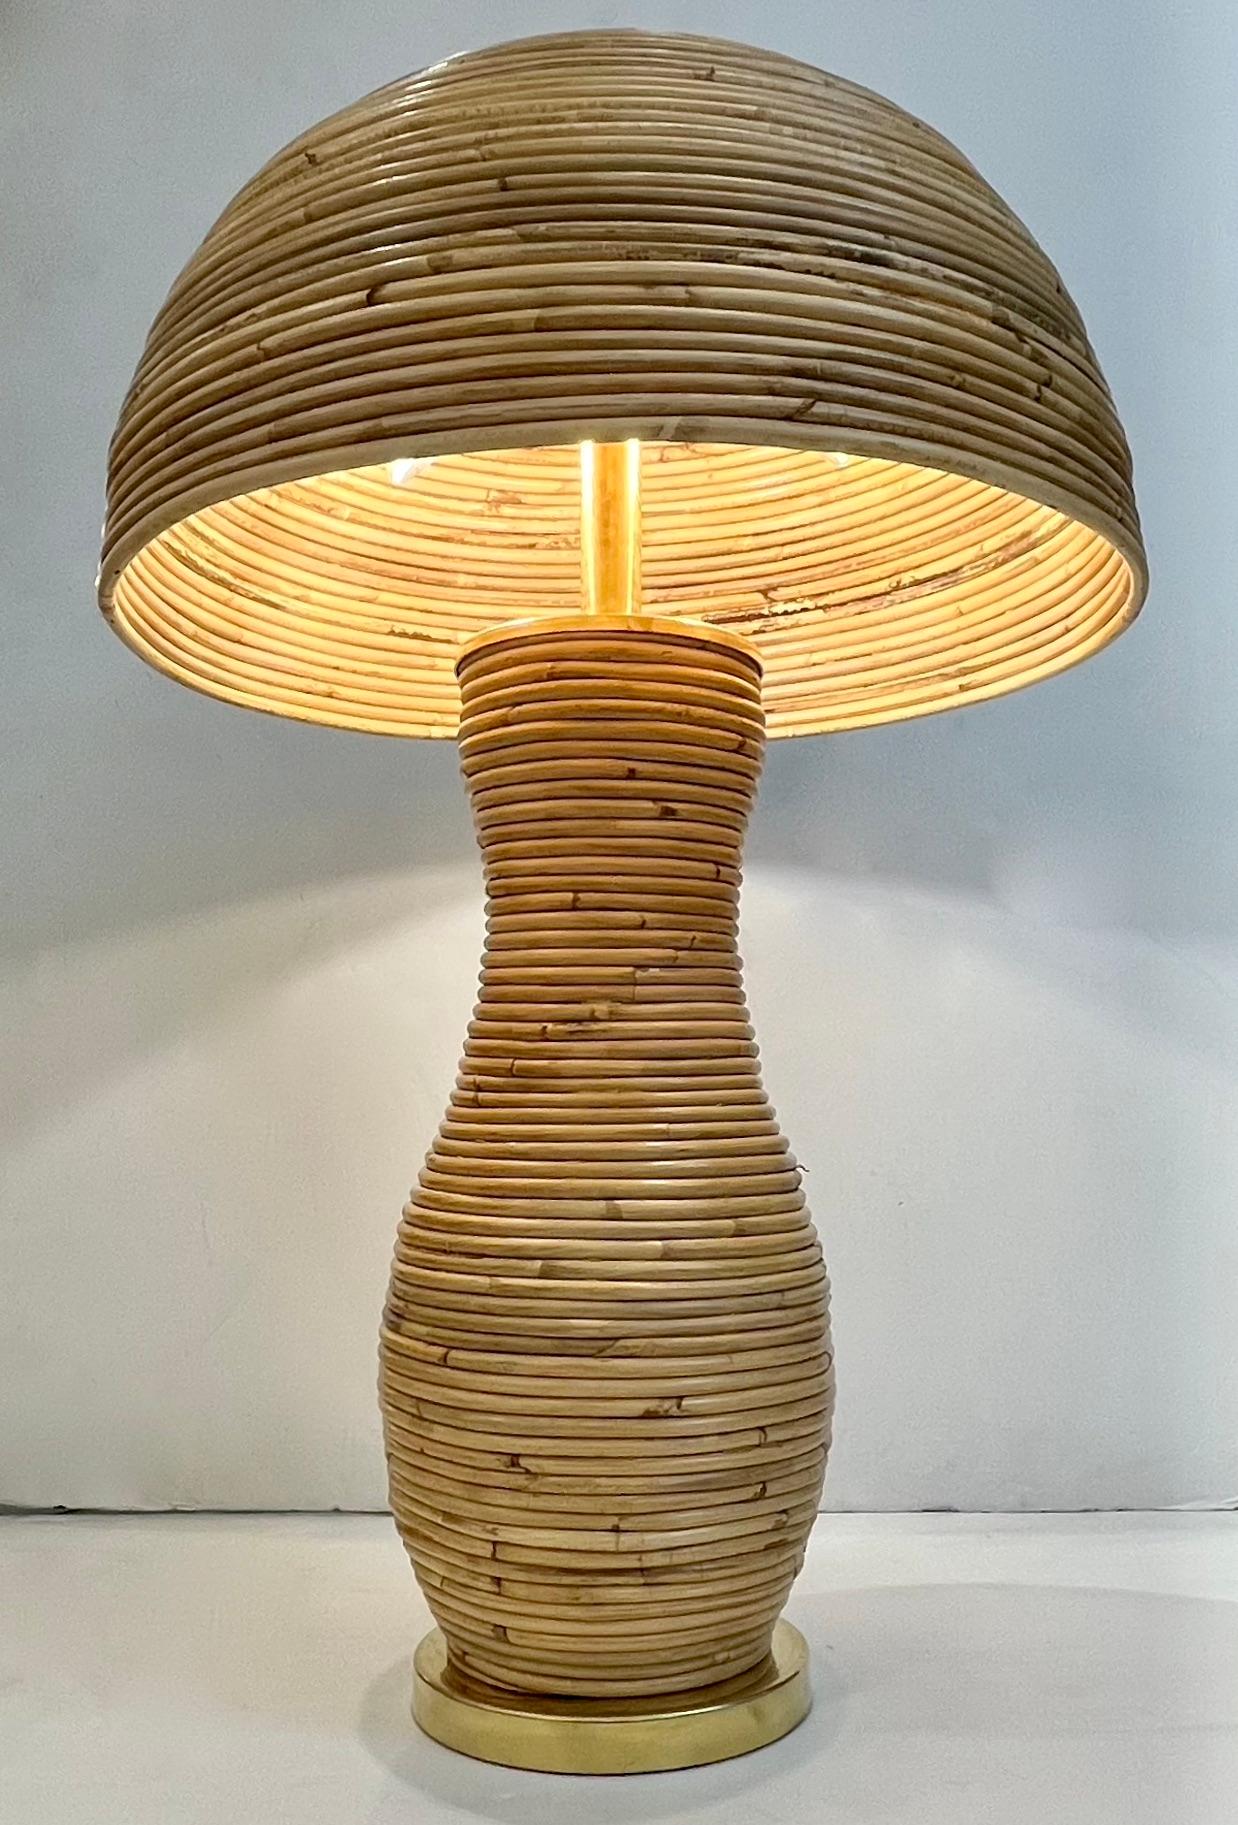 Une création contemporaine organique, entièrement réalisée à la main en Italie, une lampe de table en bambou champignon, le corps incurvé sensuel entièrement décoré en rotin sur une base ronde en laiton et équipé d'un élégant abat-jour demi-lune